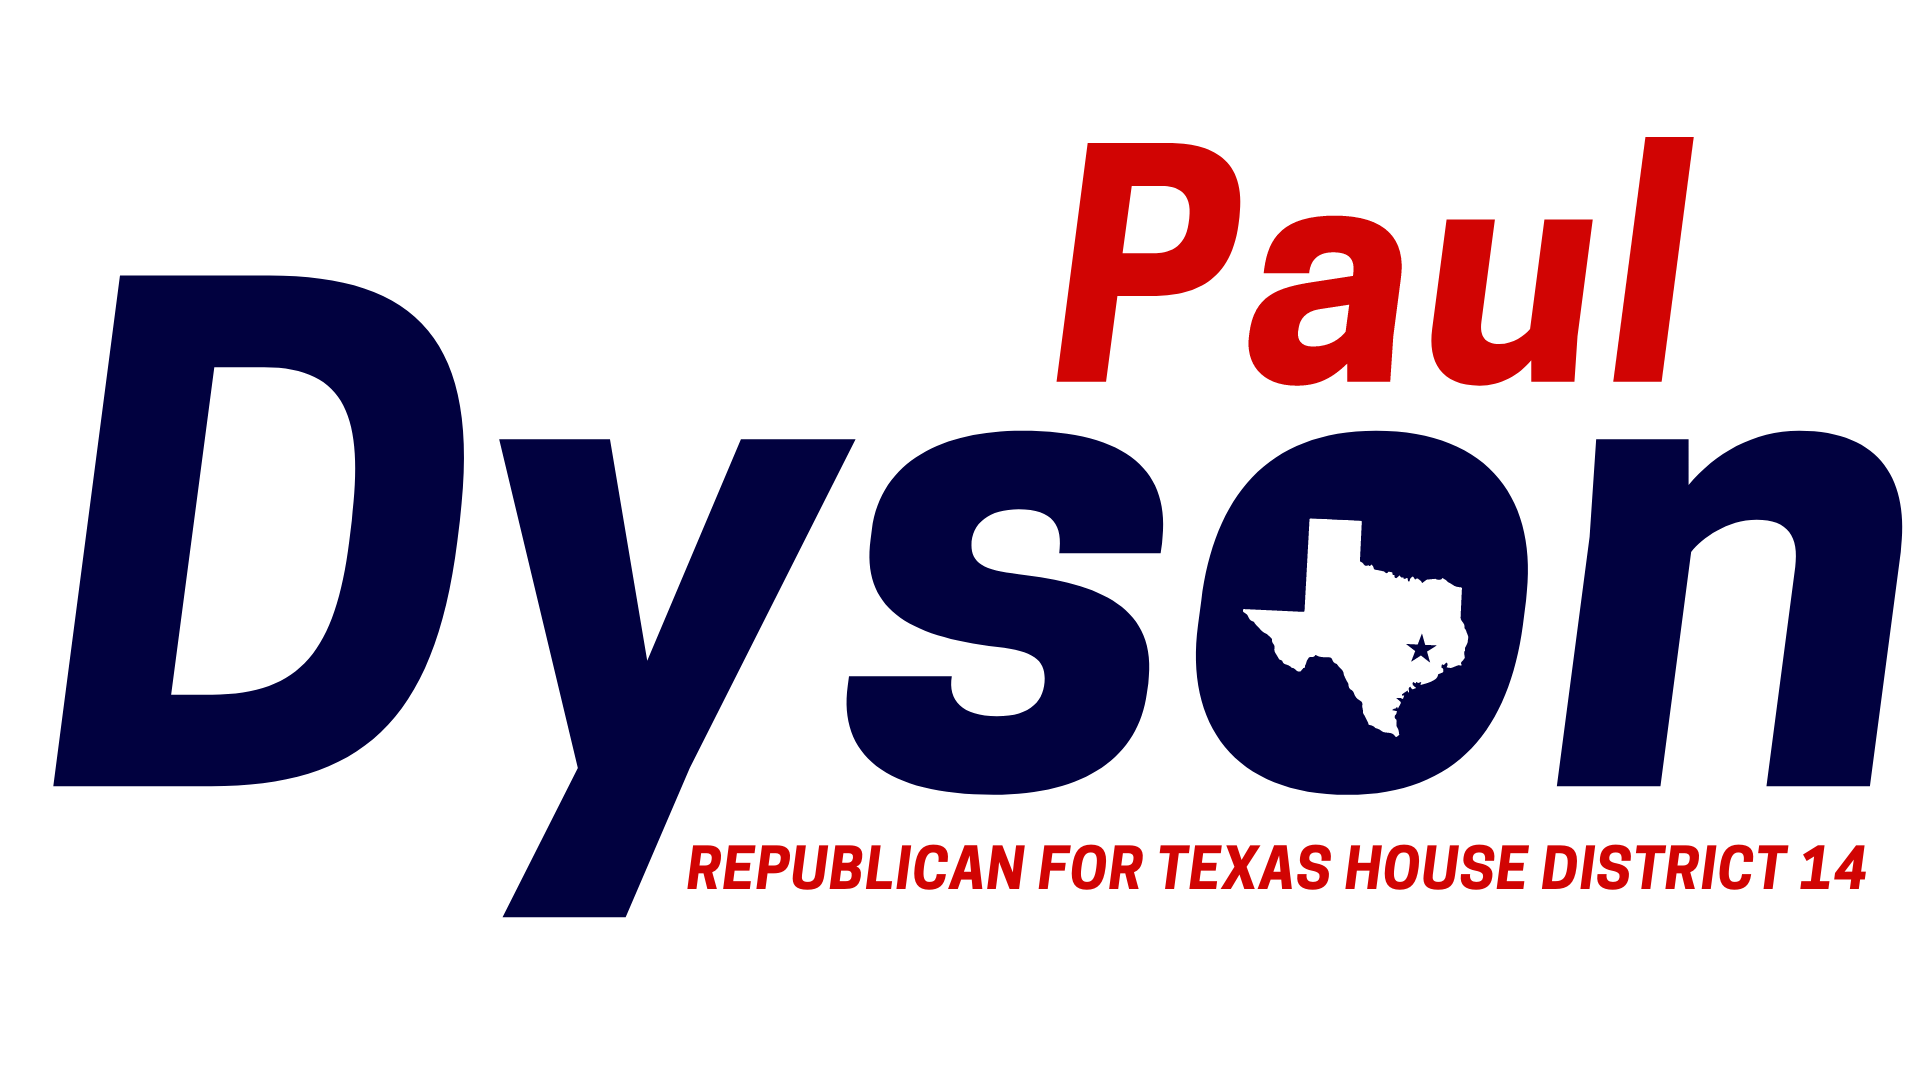 Paul Dyson for Texas